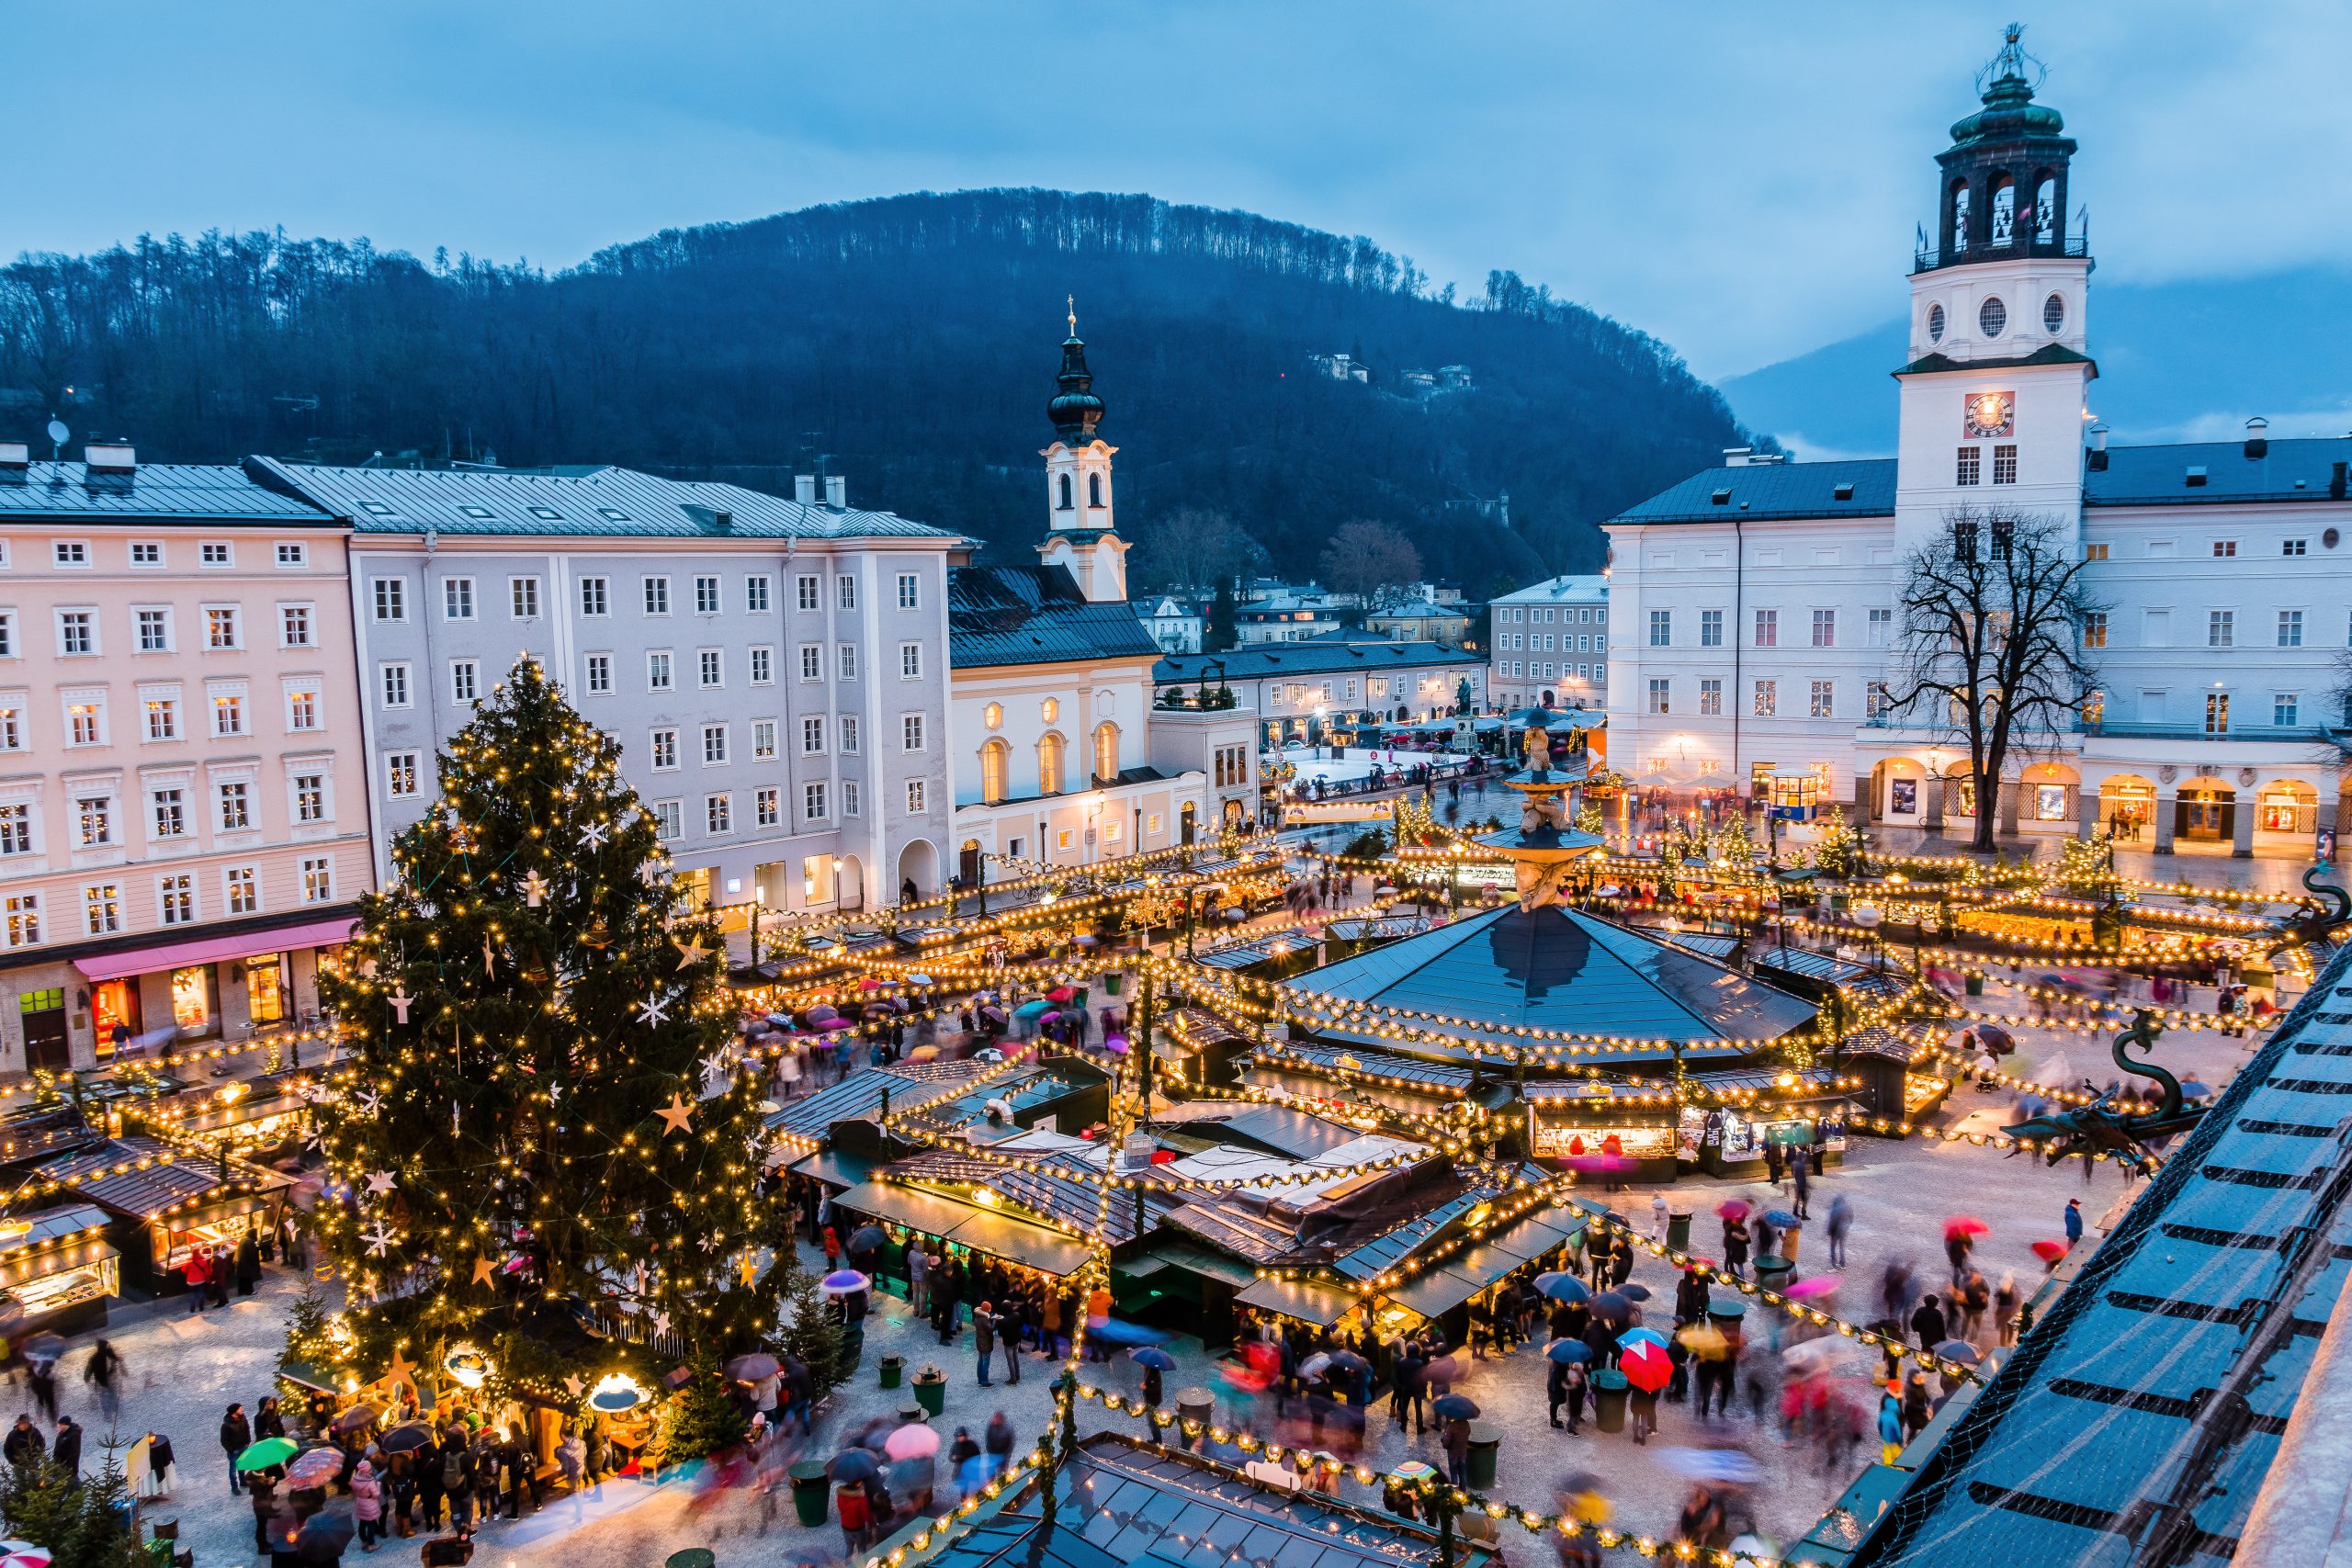 Europea Christmas Market Tours